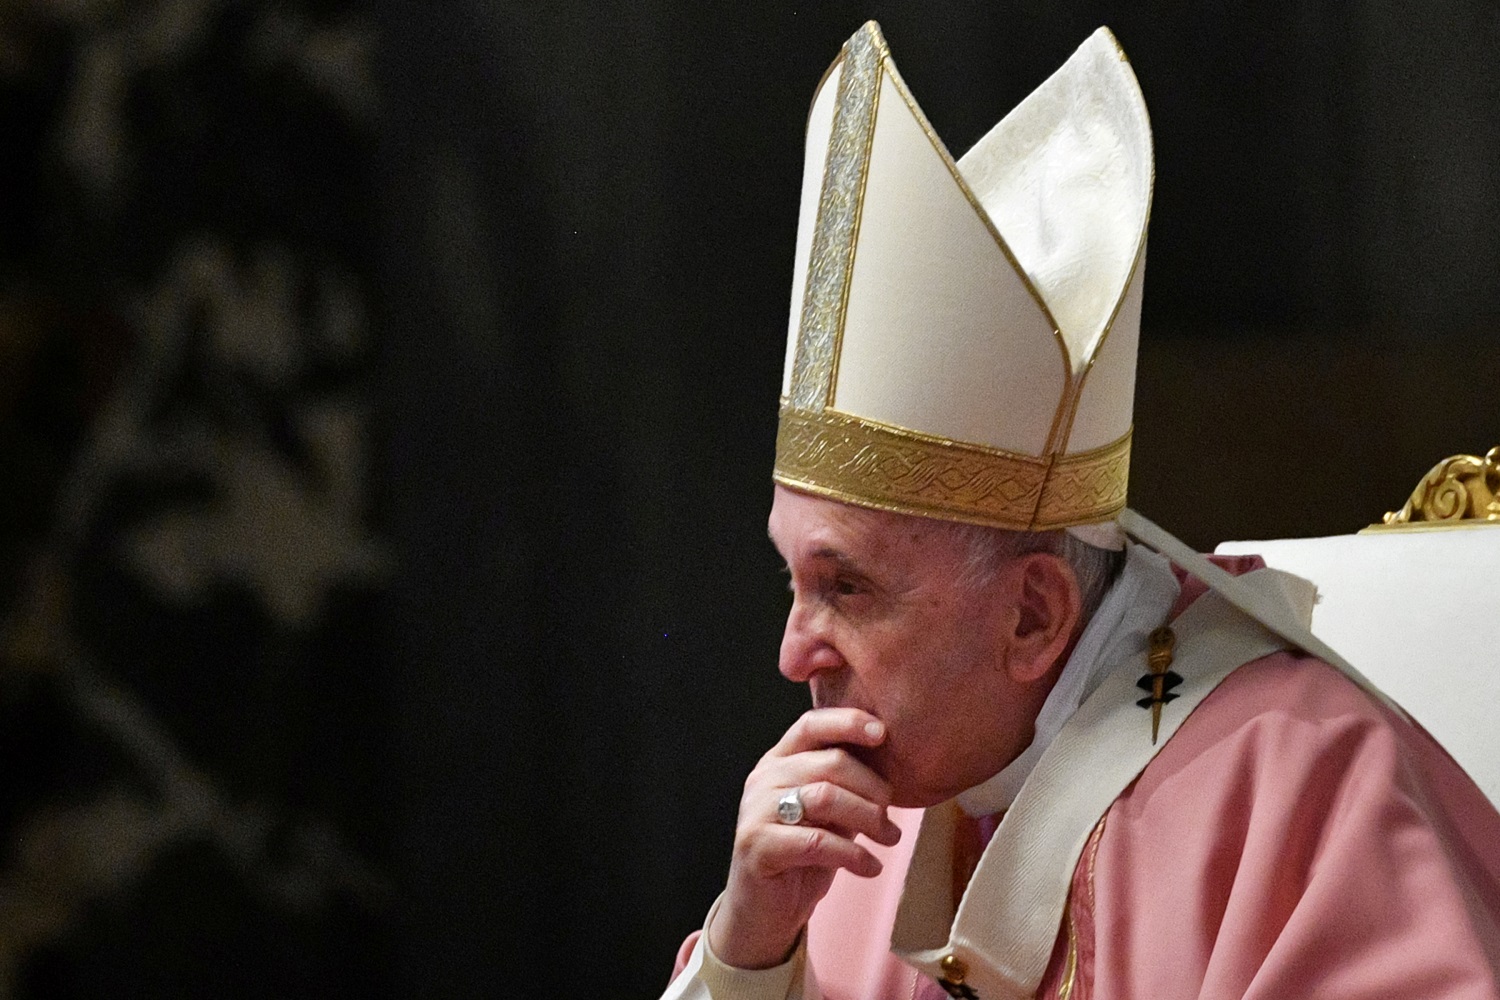 El papa Francisco rechazó la renuncia de obispo acusado de encubrir abusos sexuales y admite crisis en la iglesia católica